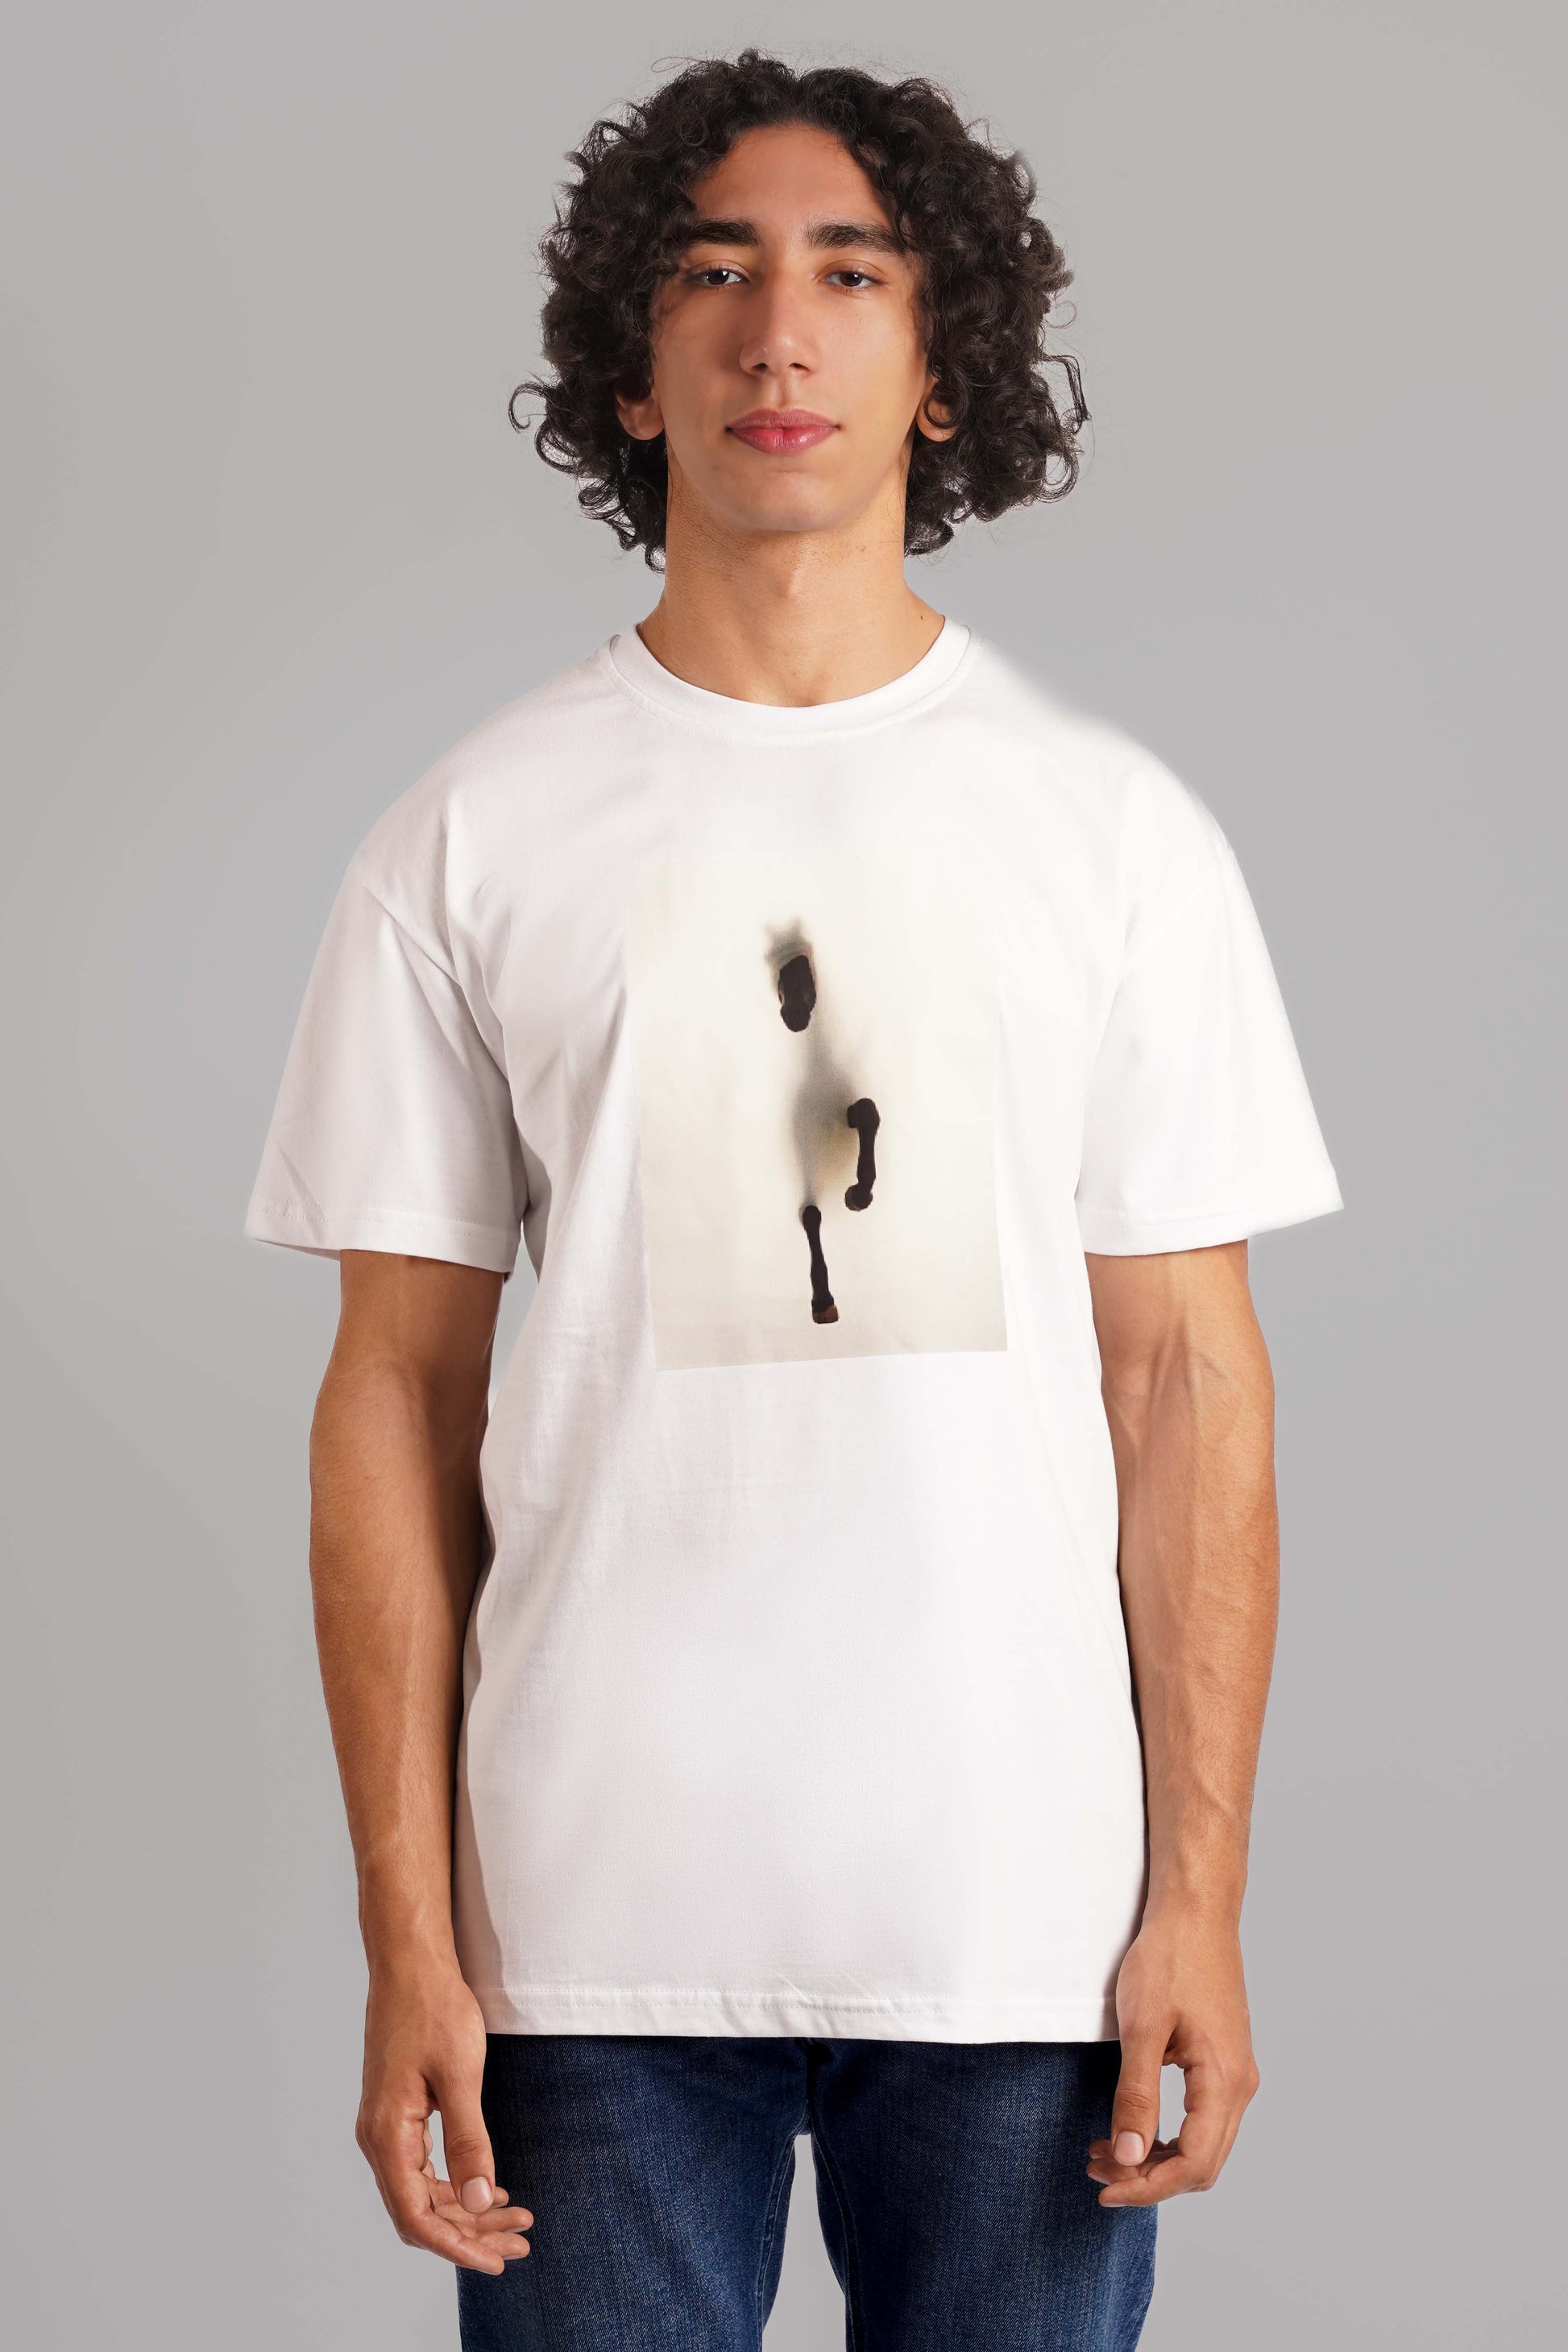 Arabian T-Shirt White Men